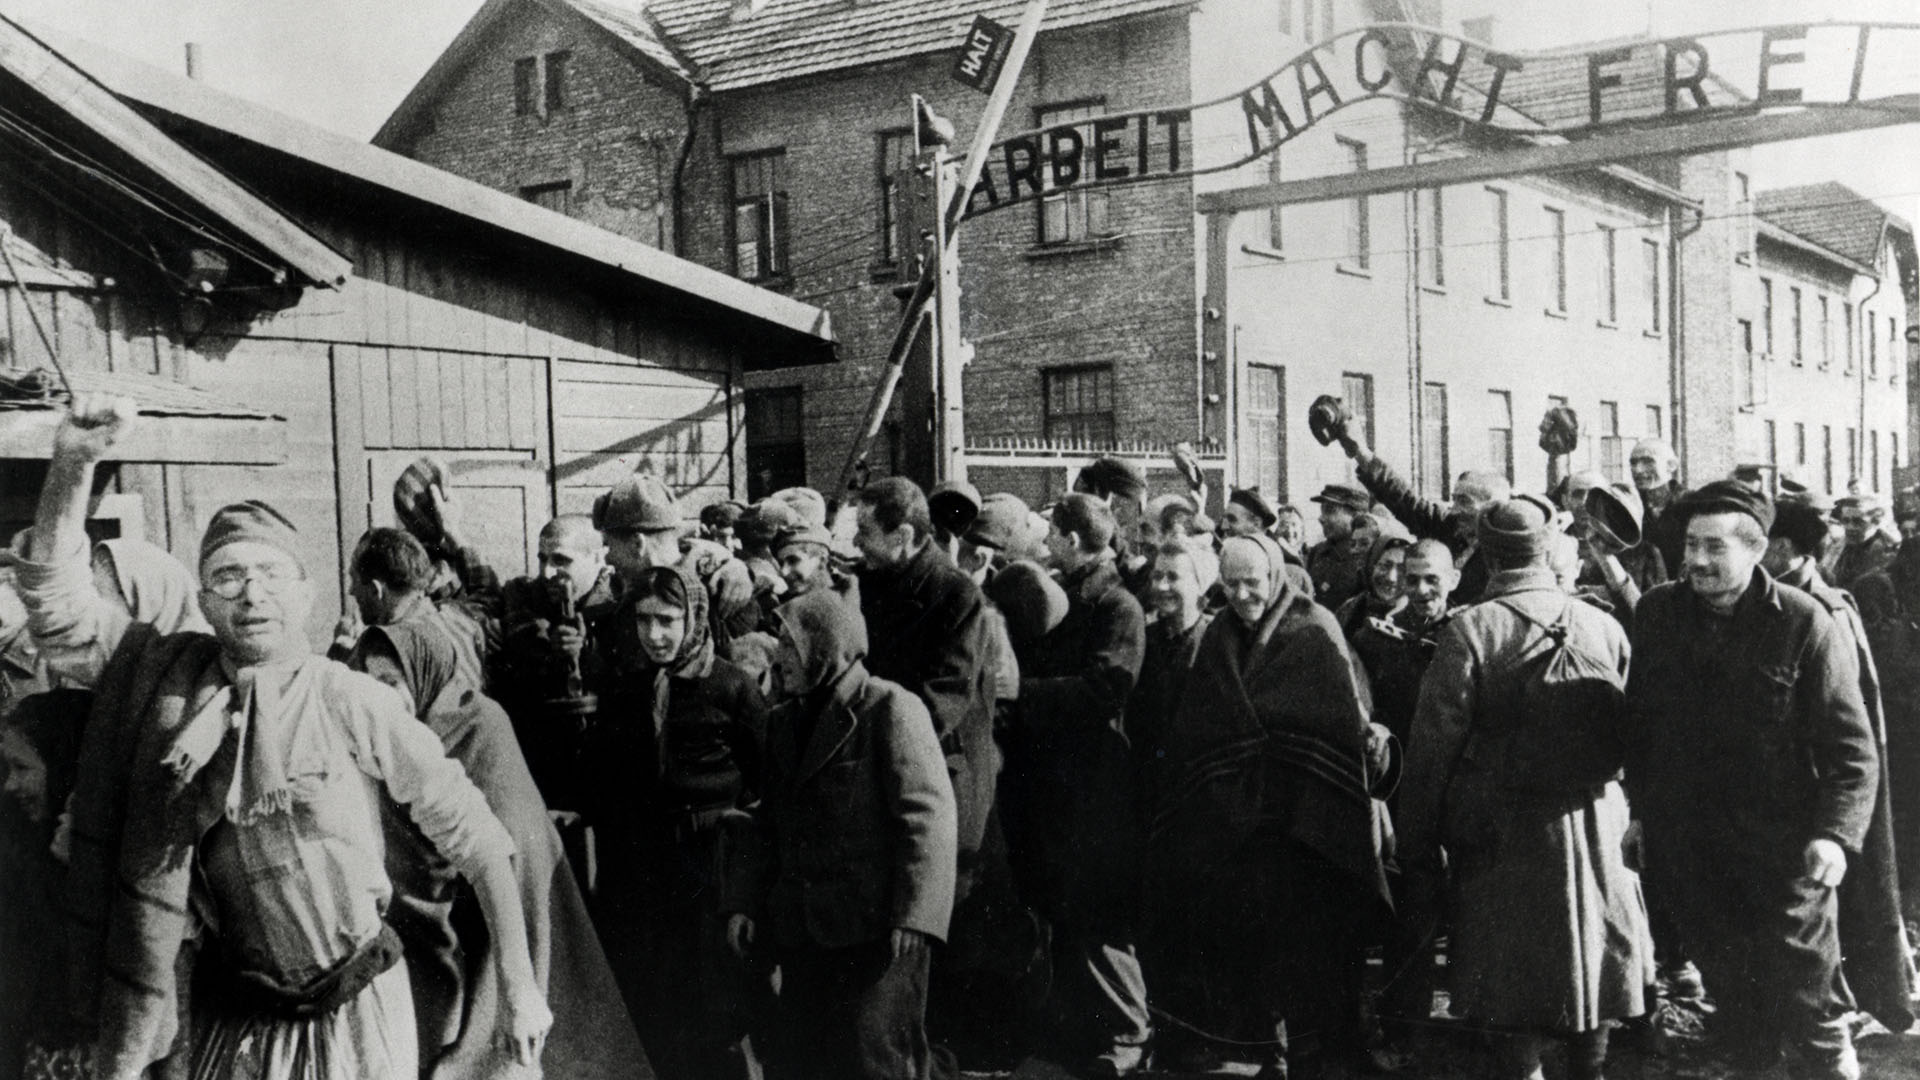 La imagen fue tomada por un fotógrafo ruso: sobrevivientes de Auschwitz salen del campo al final de la Segunda Guerra Mundial en febrero de 1945. Sobre ellos está el eslogan alemán "Arbeit macht frei" ("El trabajo hace libre") (Galerie Bilderwelt/Getty Images)